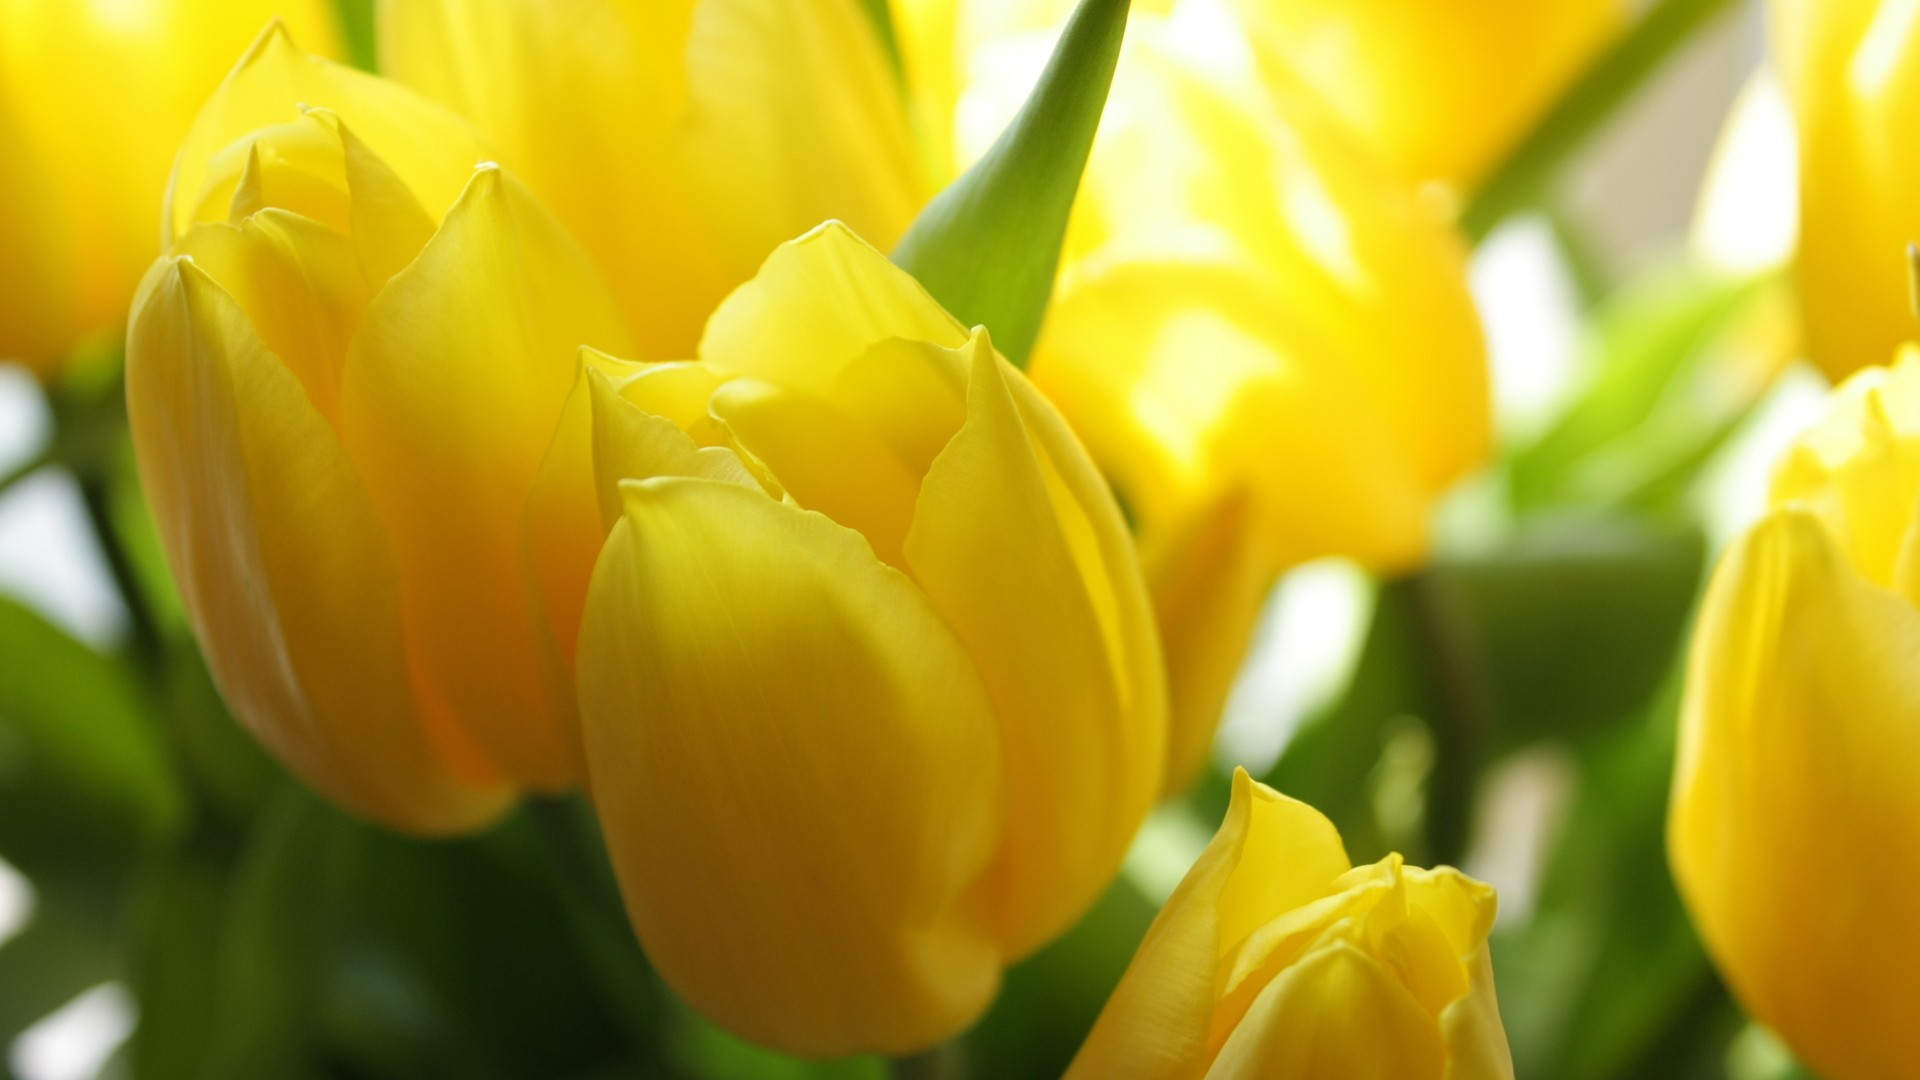 papier peint tulipes jaunes,fleur,plante à fleurs,jaune,pétale,tulipe